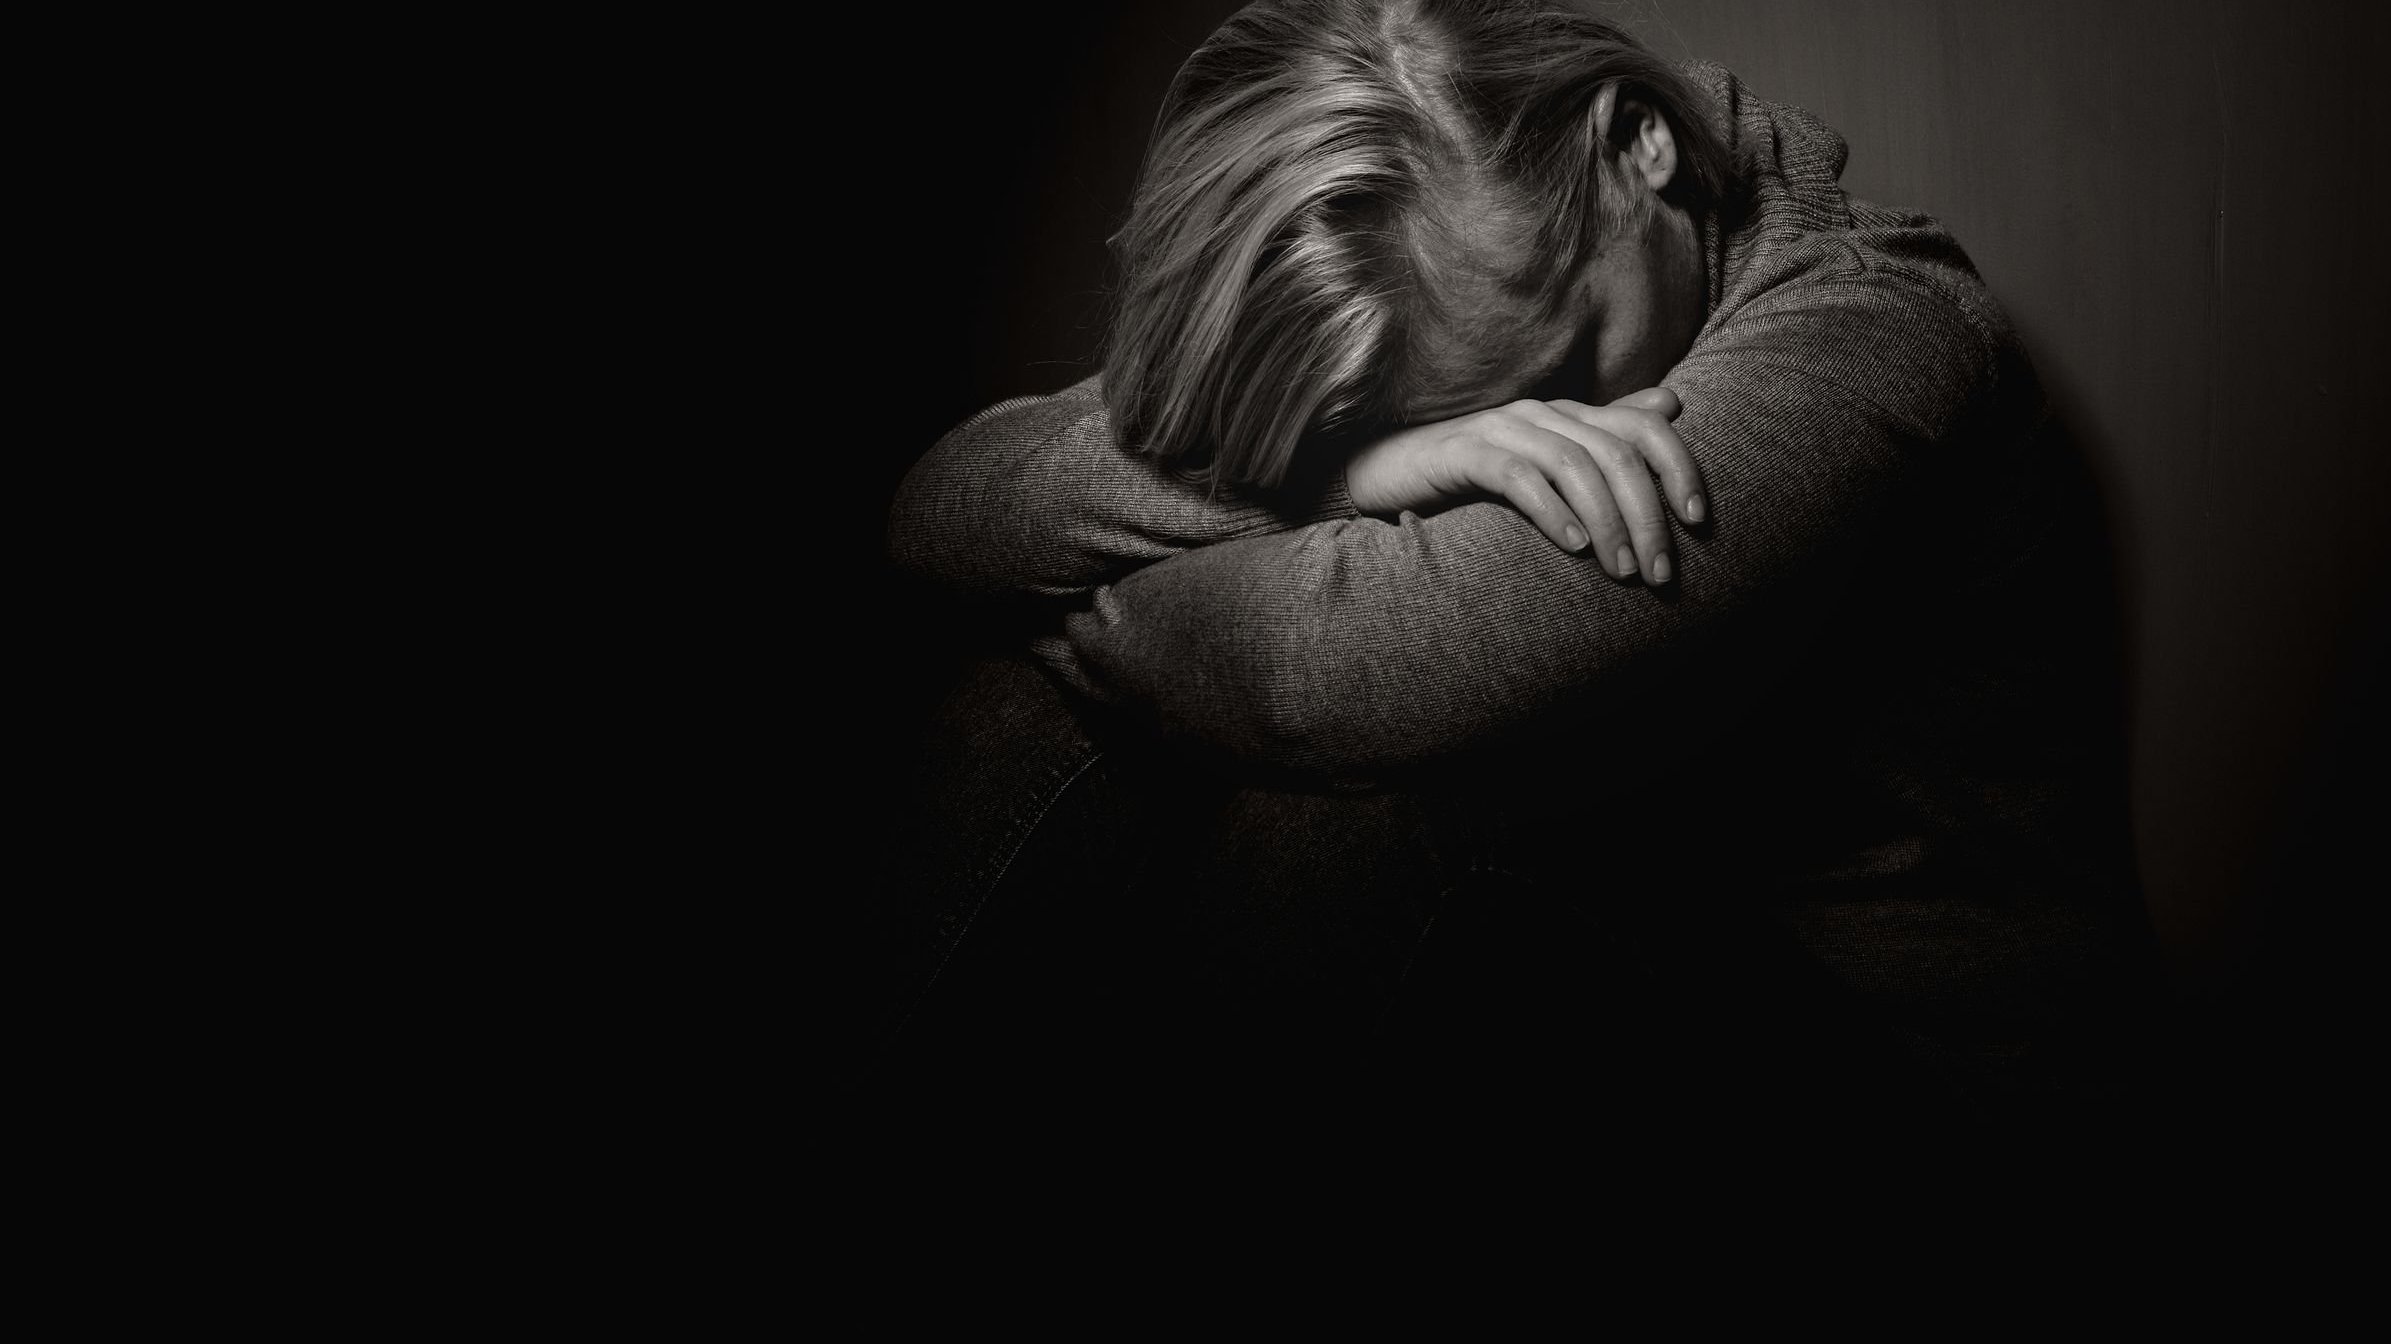 Mulher sentada no chão em um ambiente escuro com seu rosto entre os braços